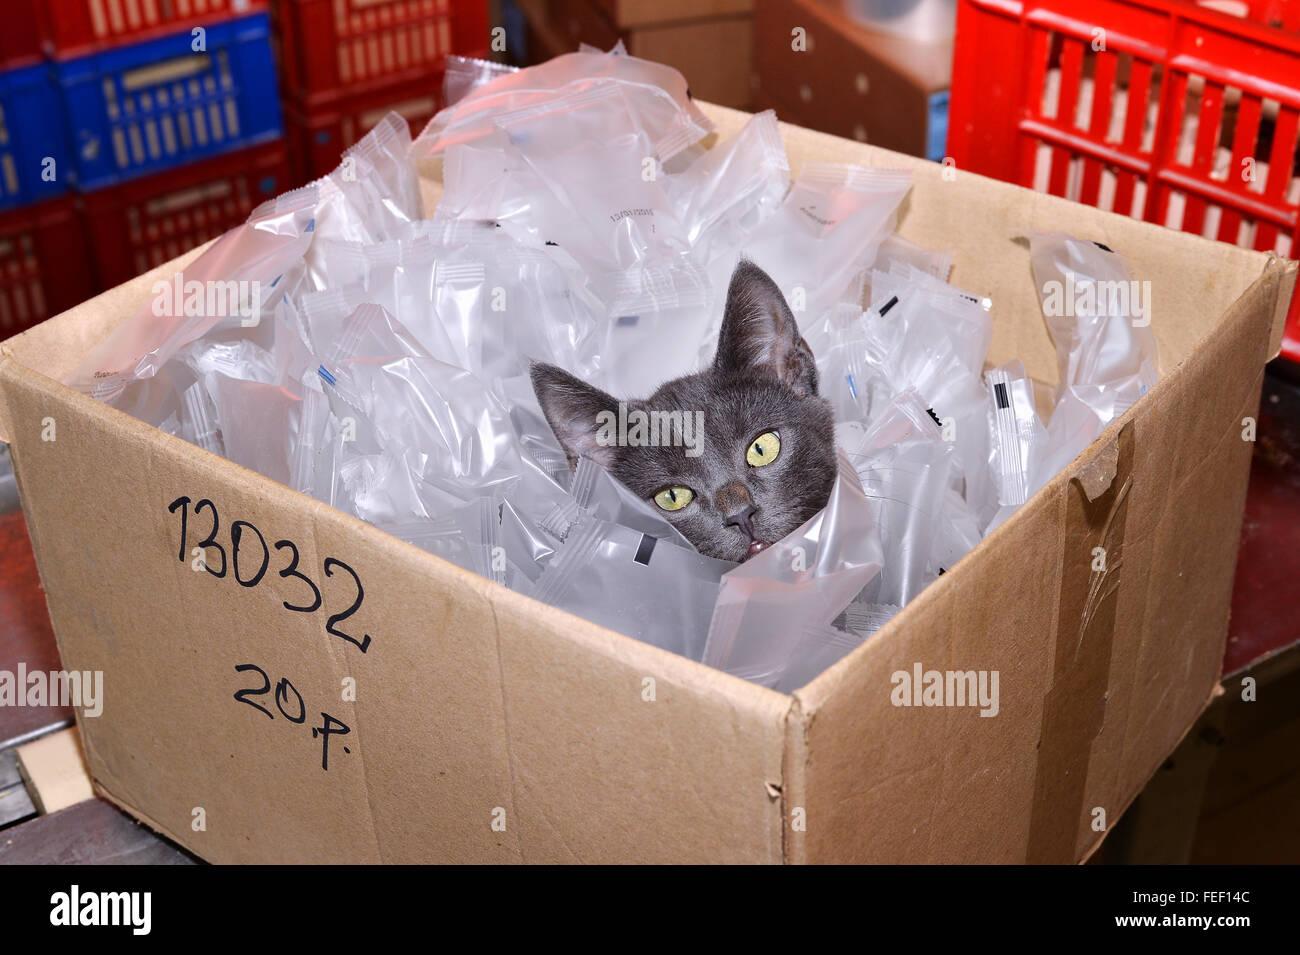 Heimatlose Katze sitzt in einem Karton, inklusive Kunststoff-Verpackungen auf Lager. Stockfoto